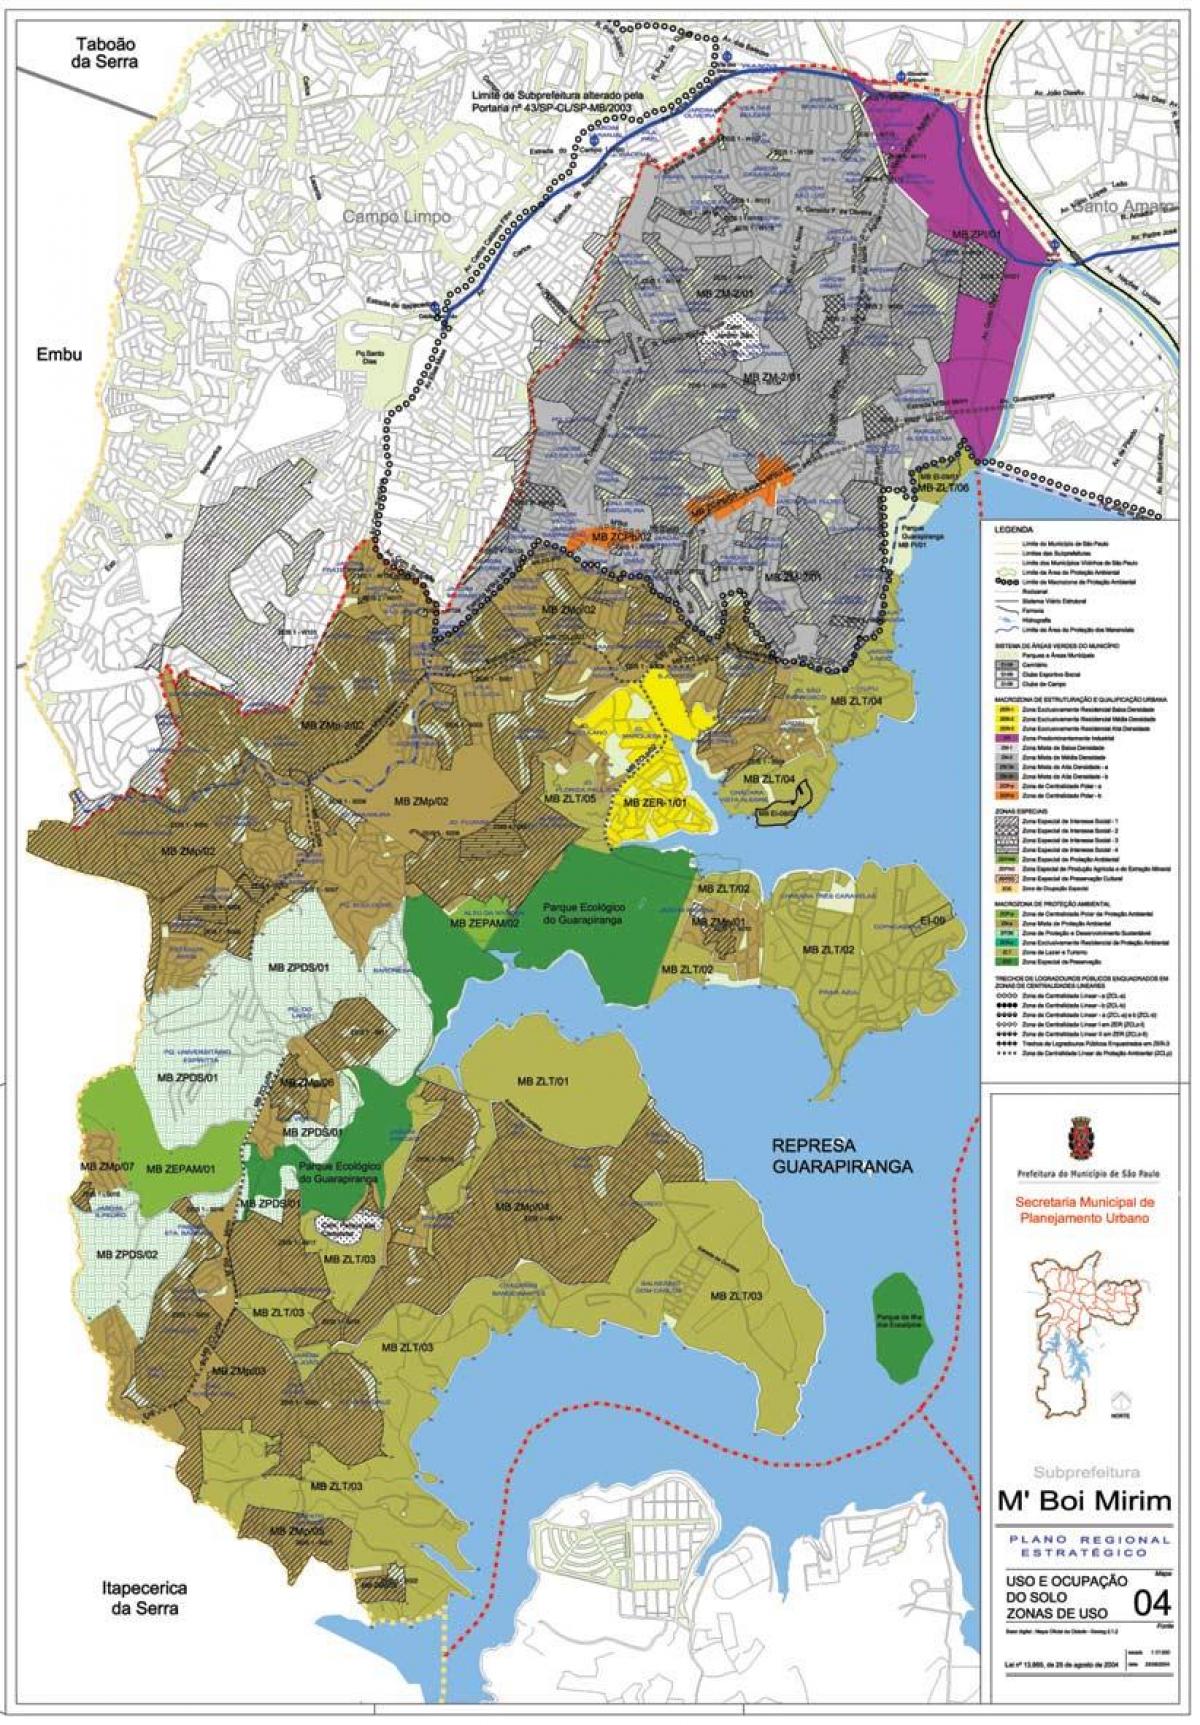 Térkép M'Boi Mirim São Paulo - Foglalkozás a talaj